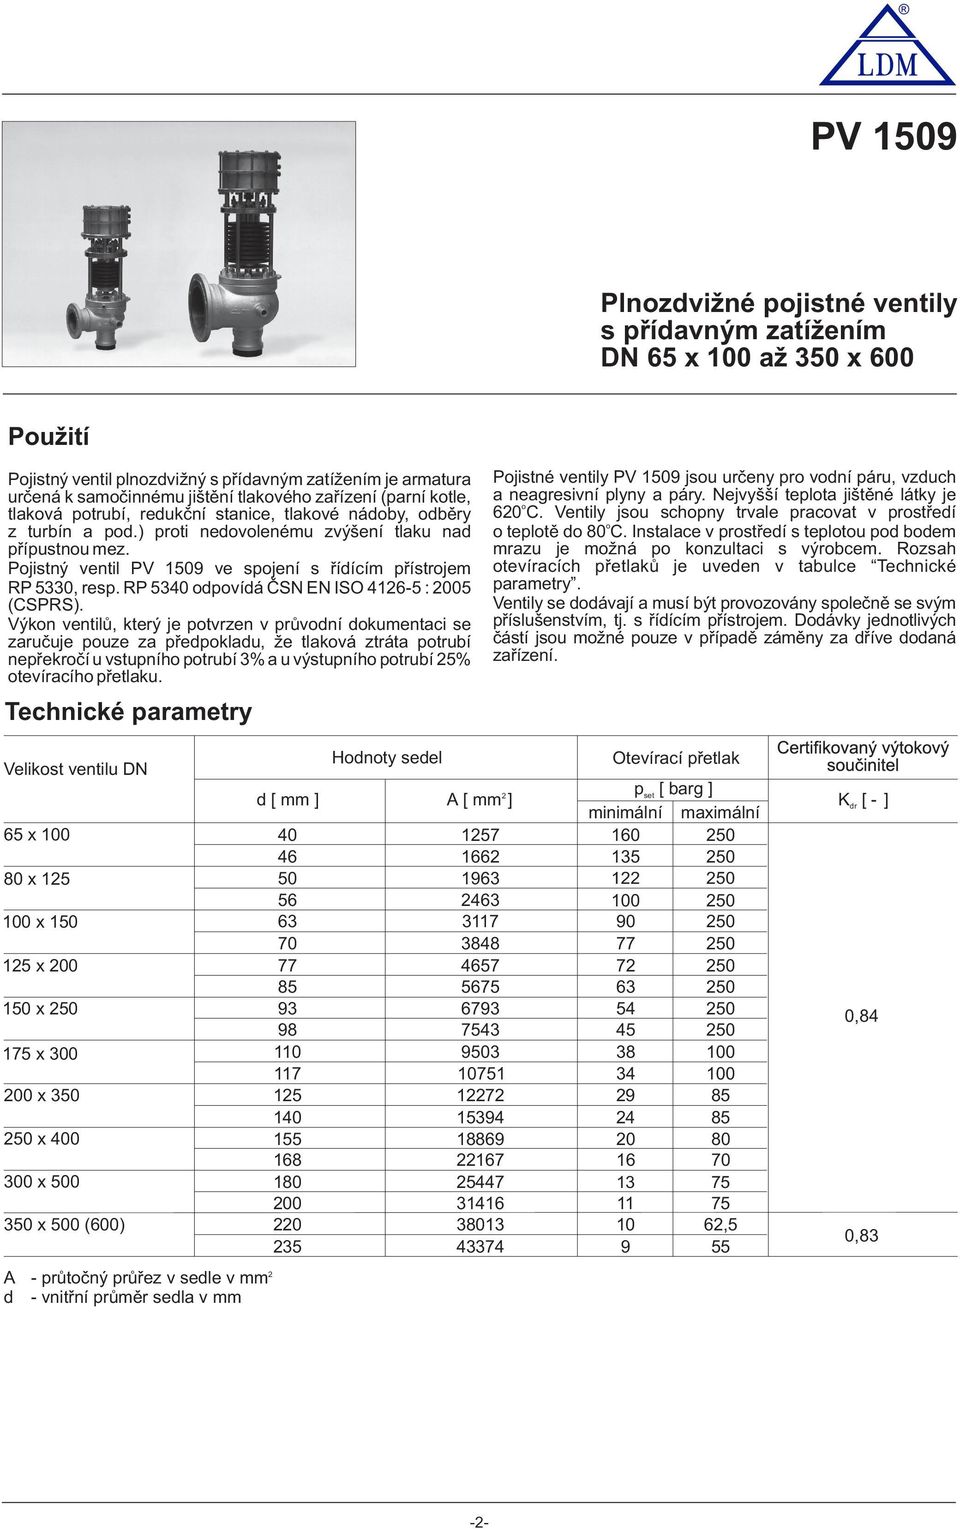 Pojistný ventil PV 1509 ve spojení s řídícím přístrojem RP 50, resp. RP 540 odpovídá ČSN EN ISO 416-5 : 005 (CSPRS).